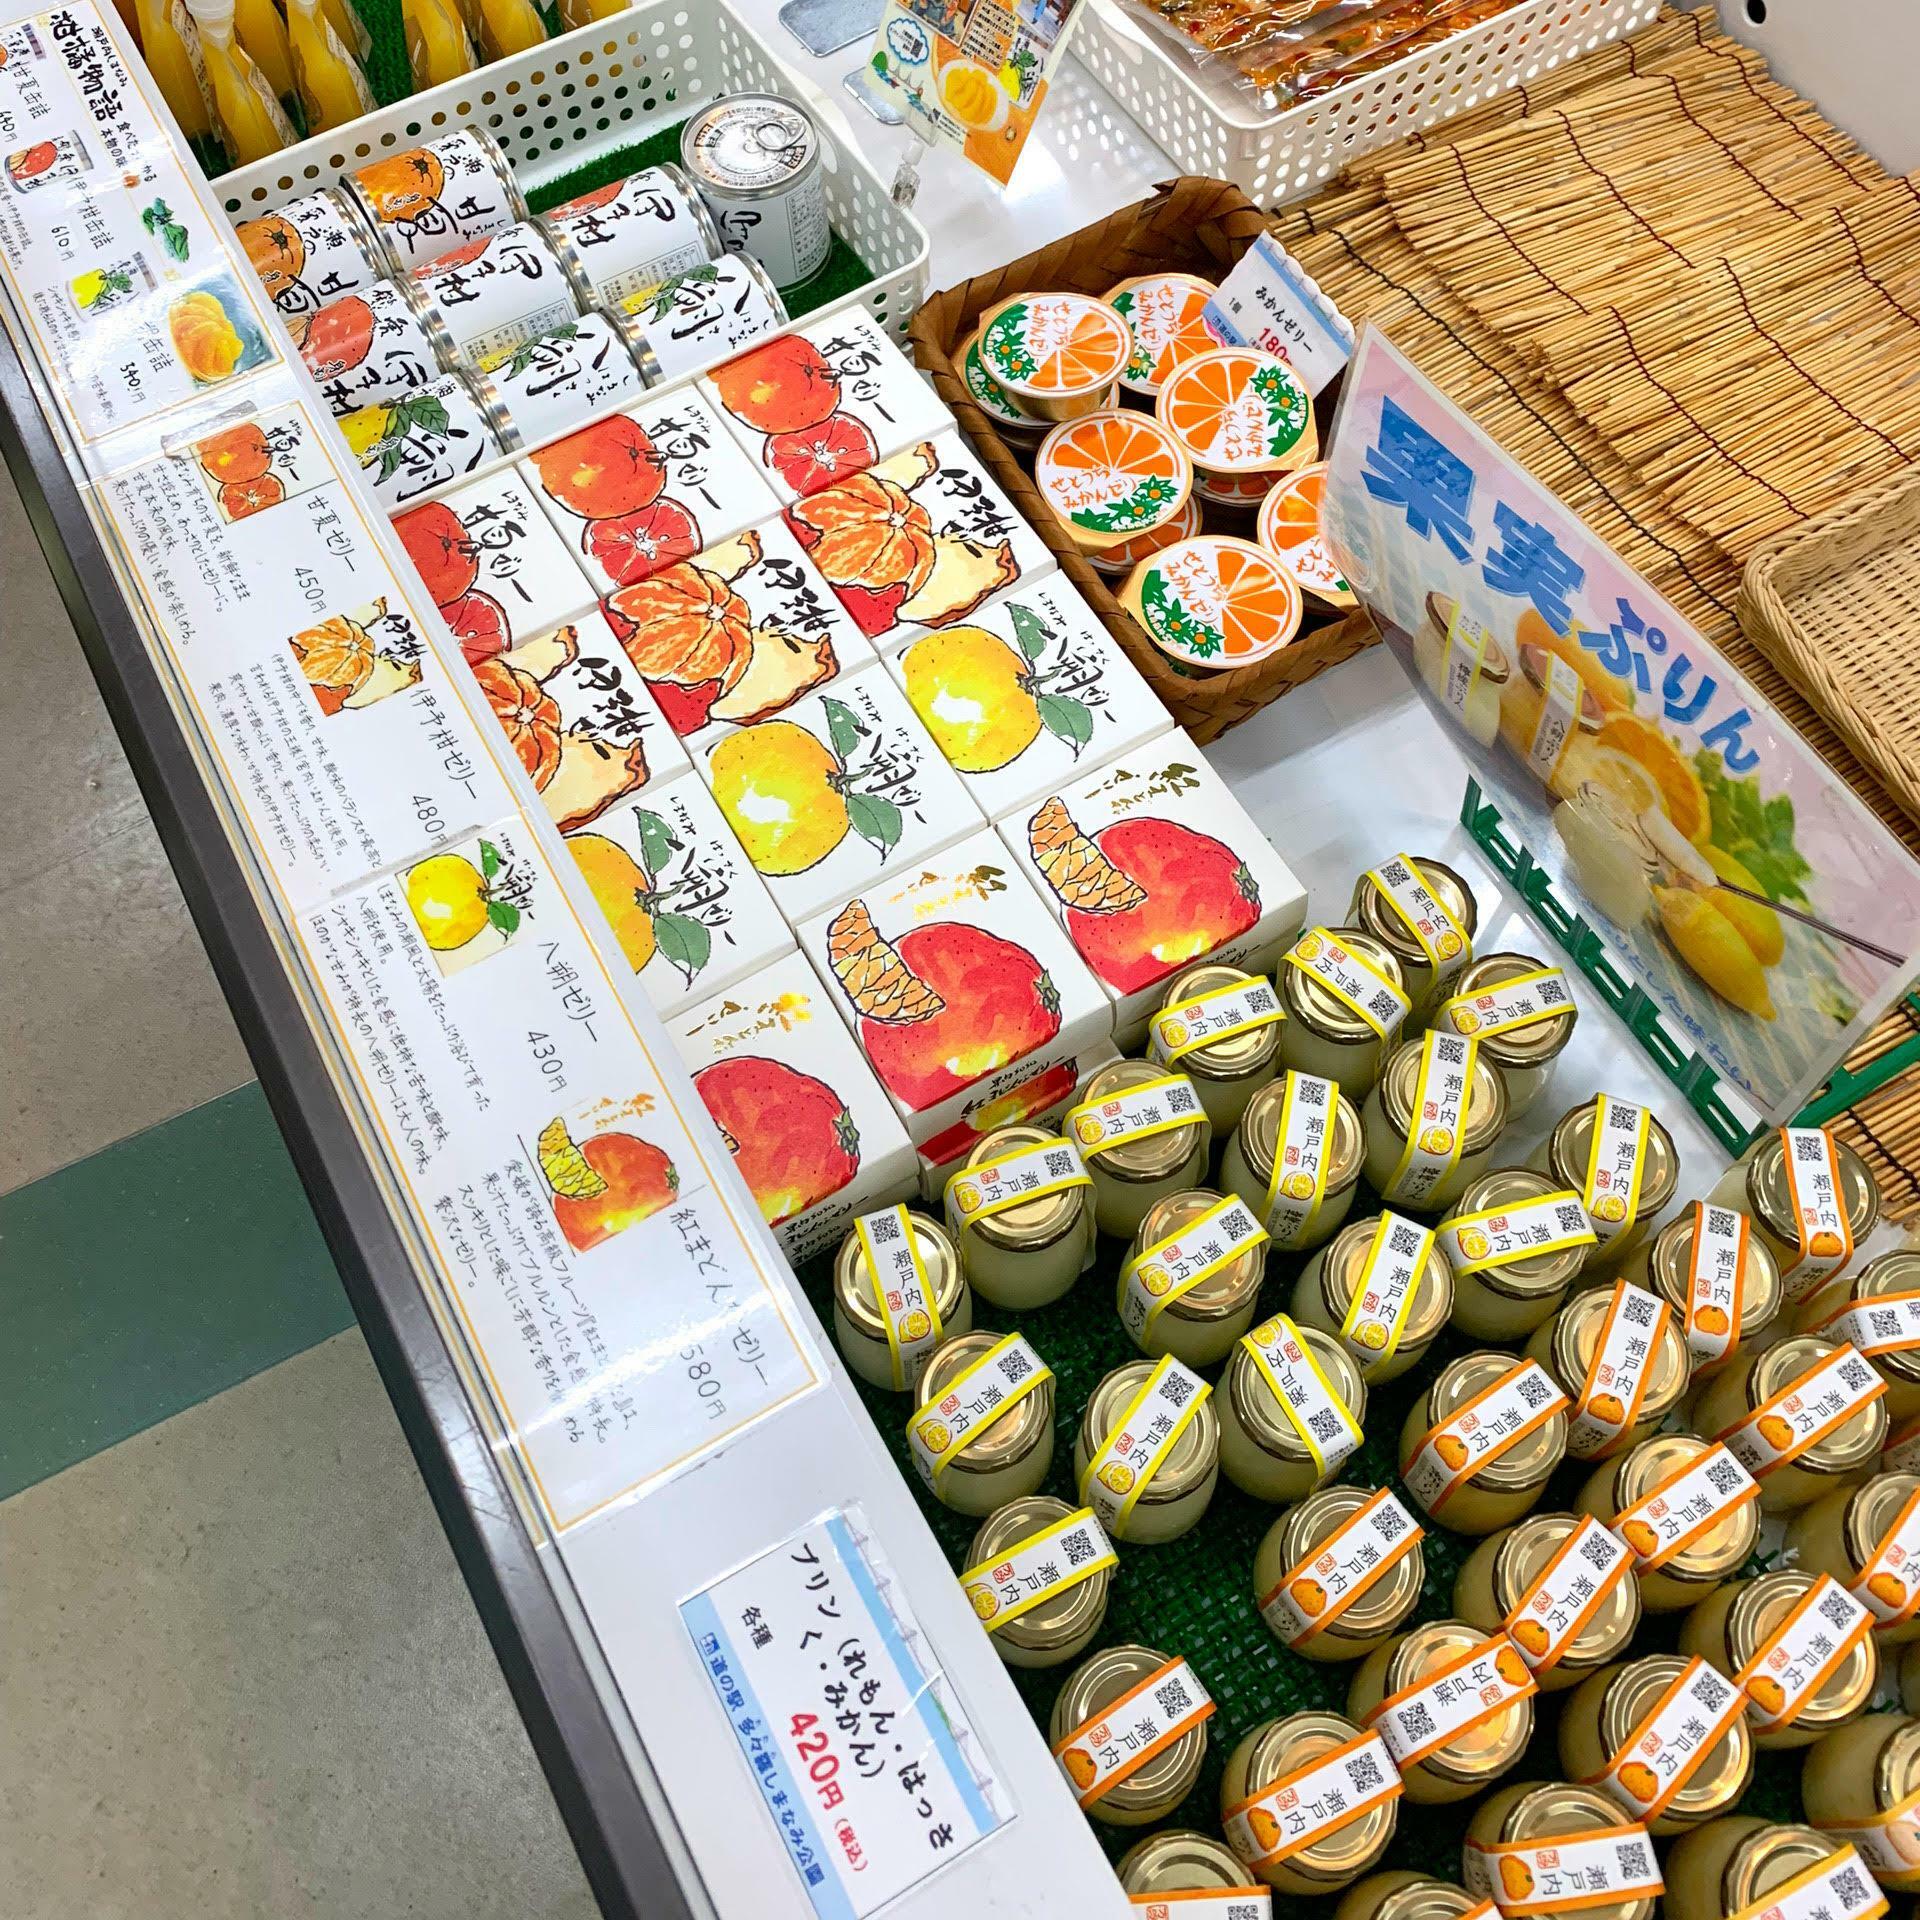 冷蔵コーナーには紅まどんななどの柑橘類を使用した美味しそうなデザートが並んでいました。